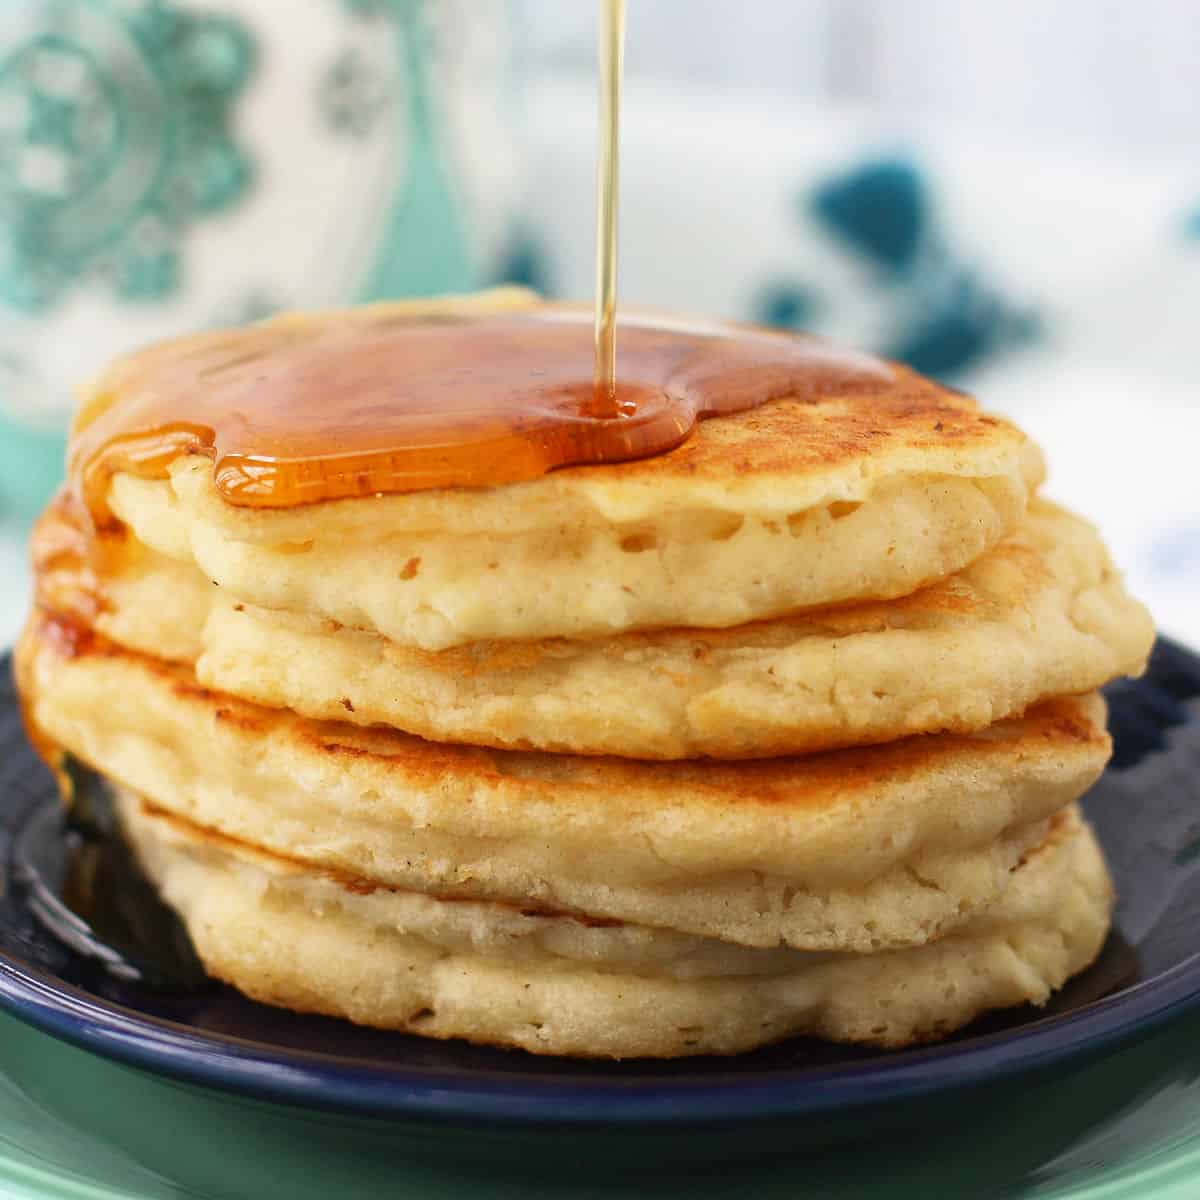 https://theprettybee.com/wp-content/uploads/2014/01/light-fluffy-vegan-pancakes-1.jpg